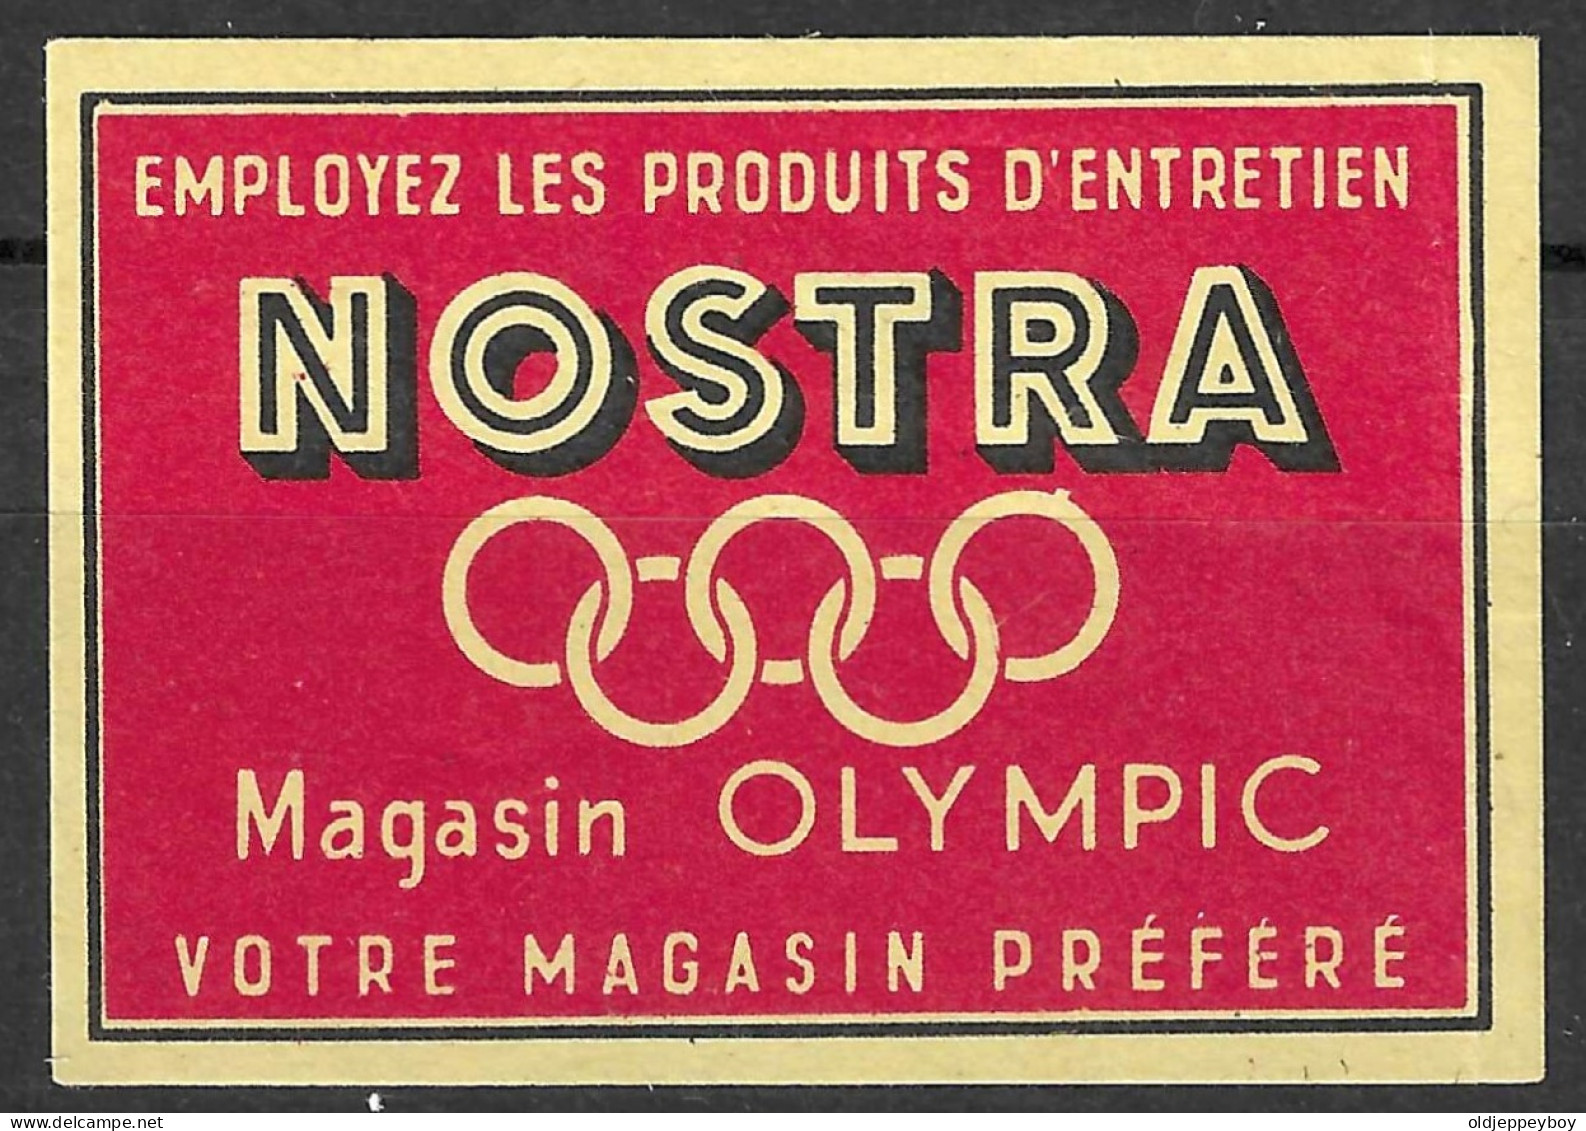  VINTAGE MATCHBOX LABEL BELGIUM 1920 Games In Antwerp  NOSTRA MAGASIN OLYMPIC VOTRE MAGASIN PREFERE   5  X 3.5  Cm  - Boites D'allumettes - Etiquettes